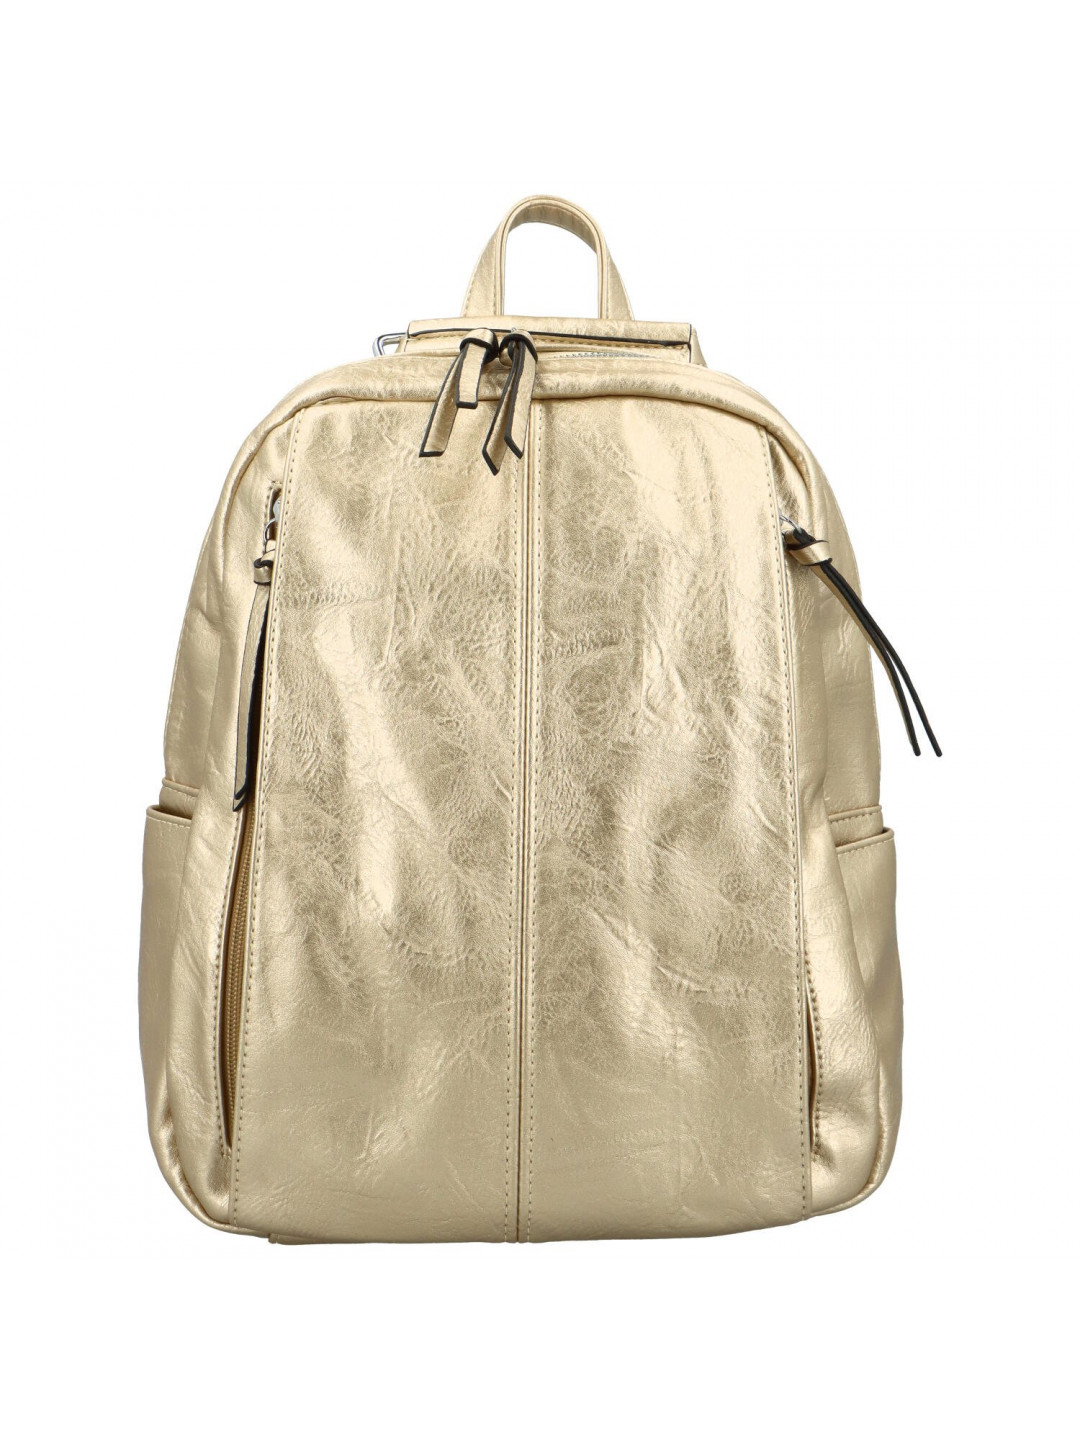 Stylový dámský koženkový kabelko batoh Cedra zlatý